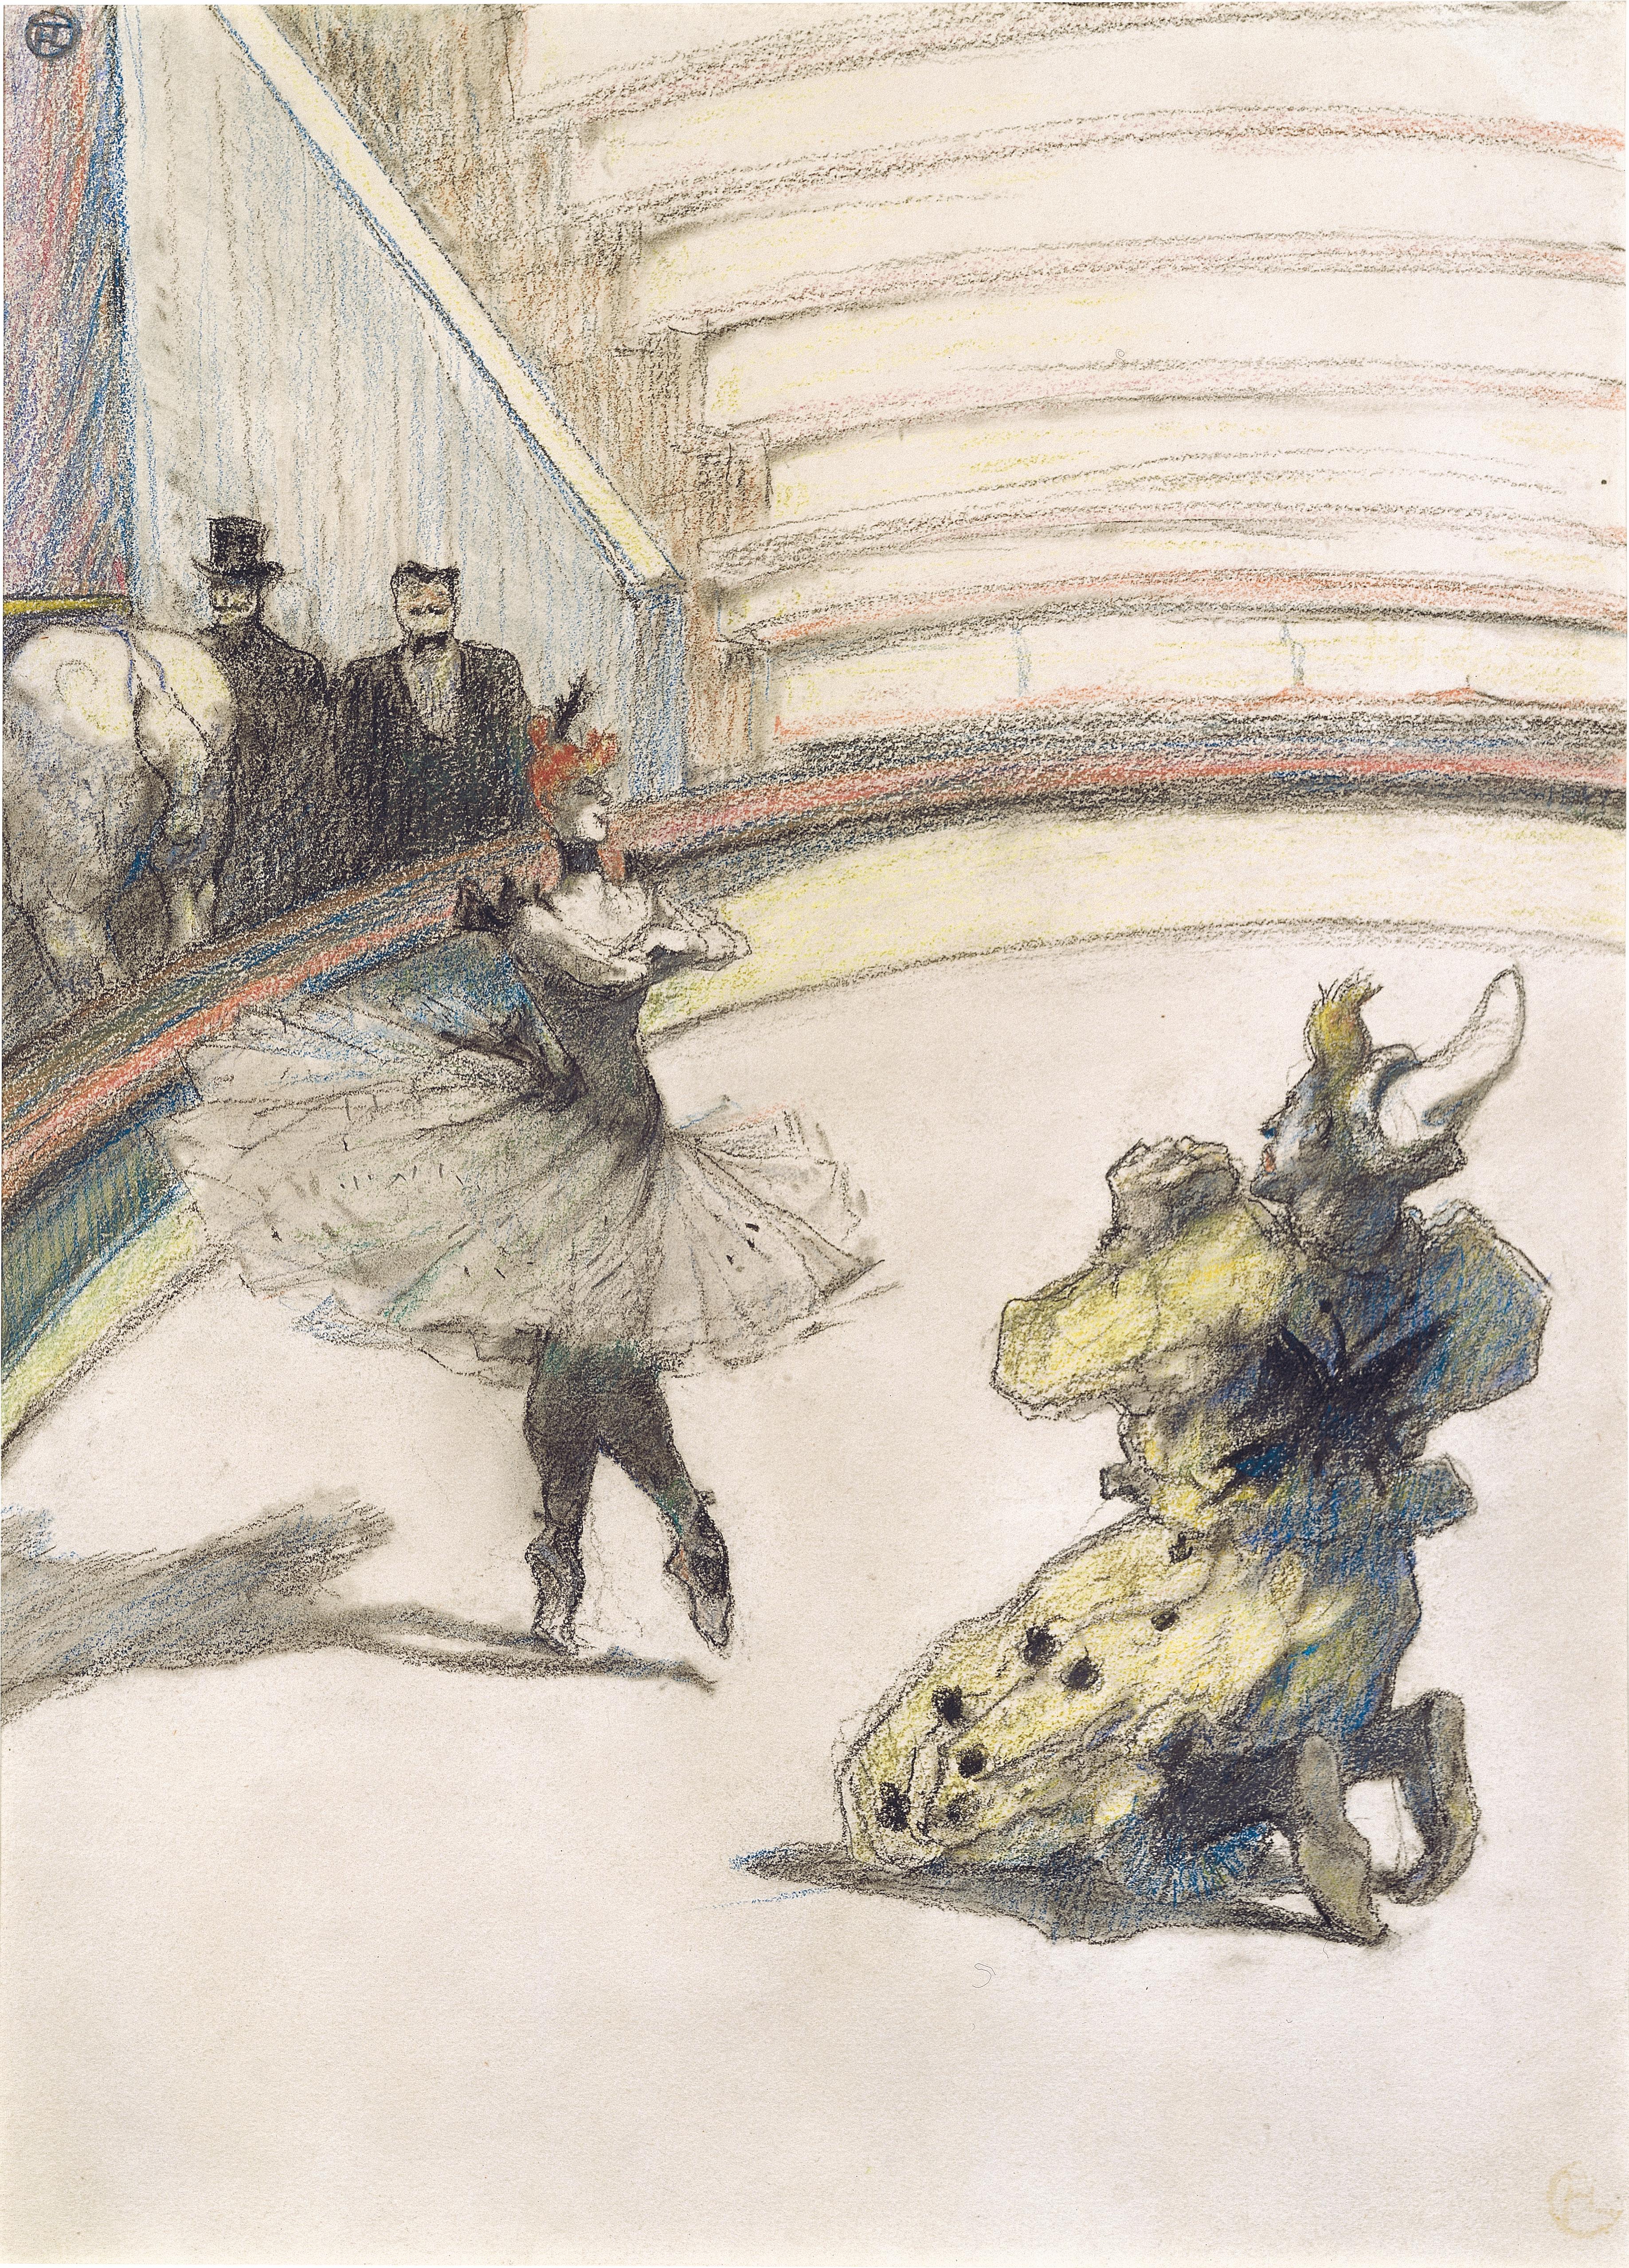 앙리 드 틀루즈 로트렉, <서커스에서: 앙코르>, 1899. 종이 위에 초크, 35.5 x 25 cm. / Collection of David Lachenmann